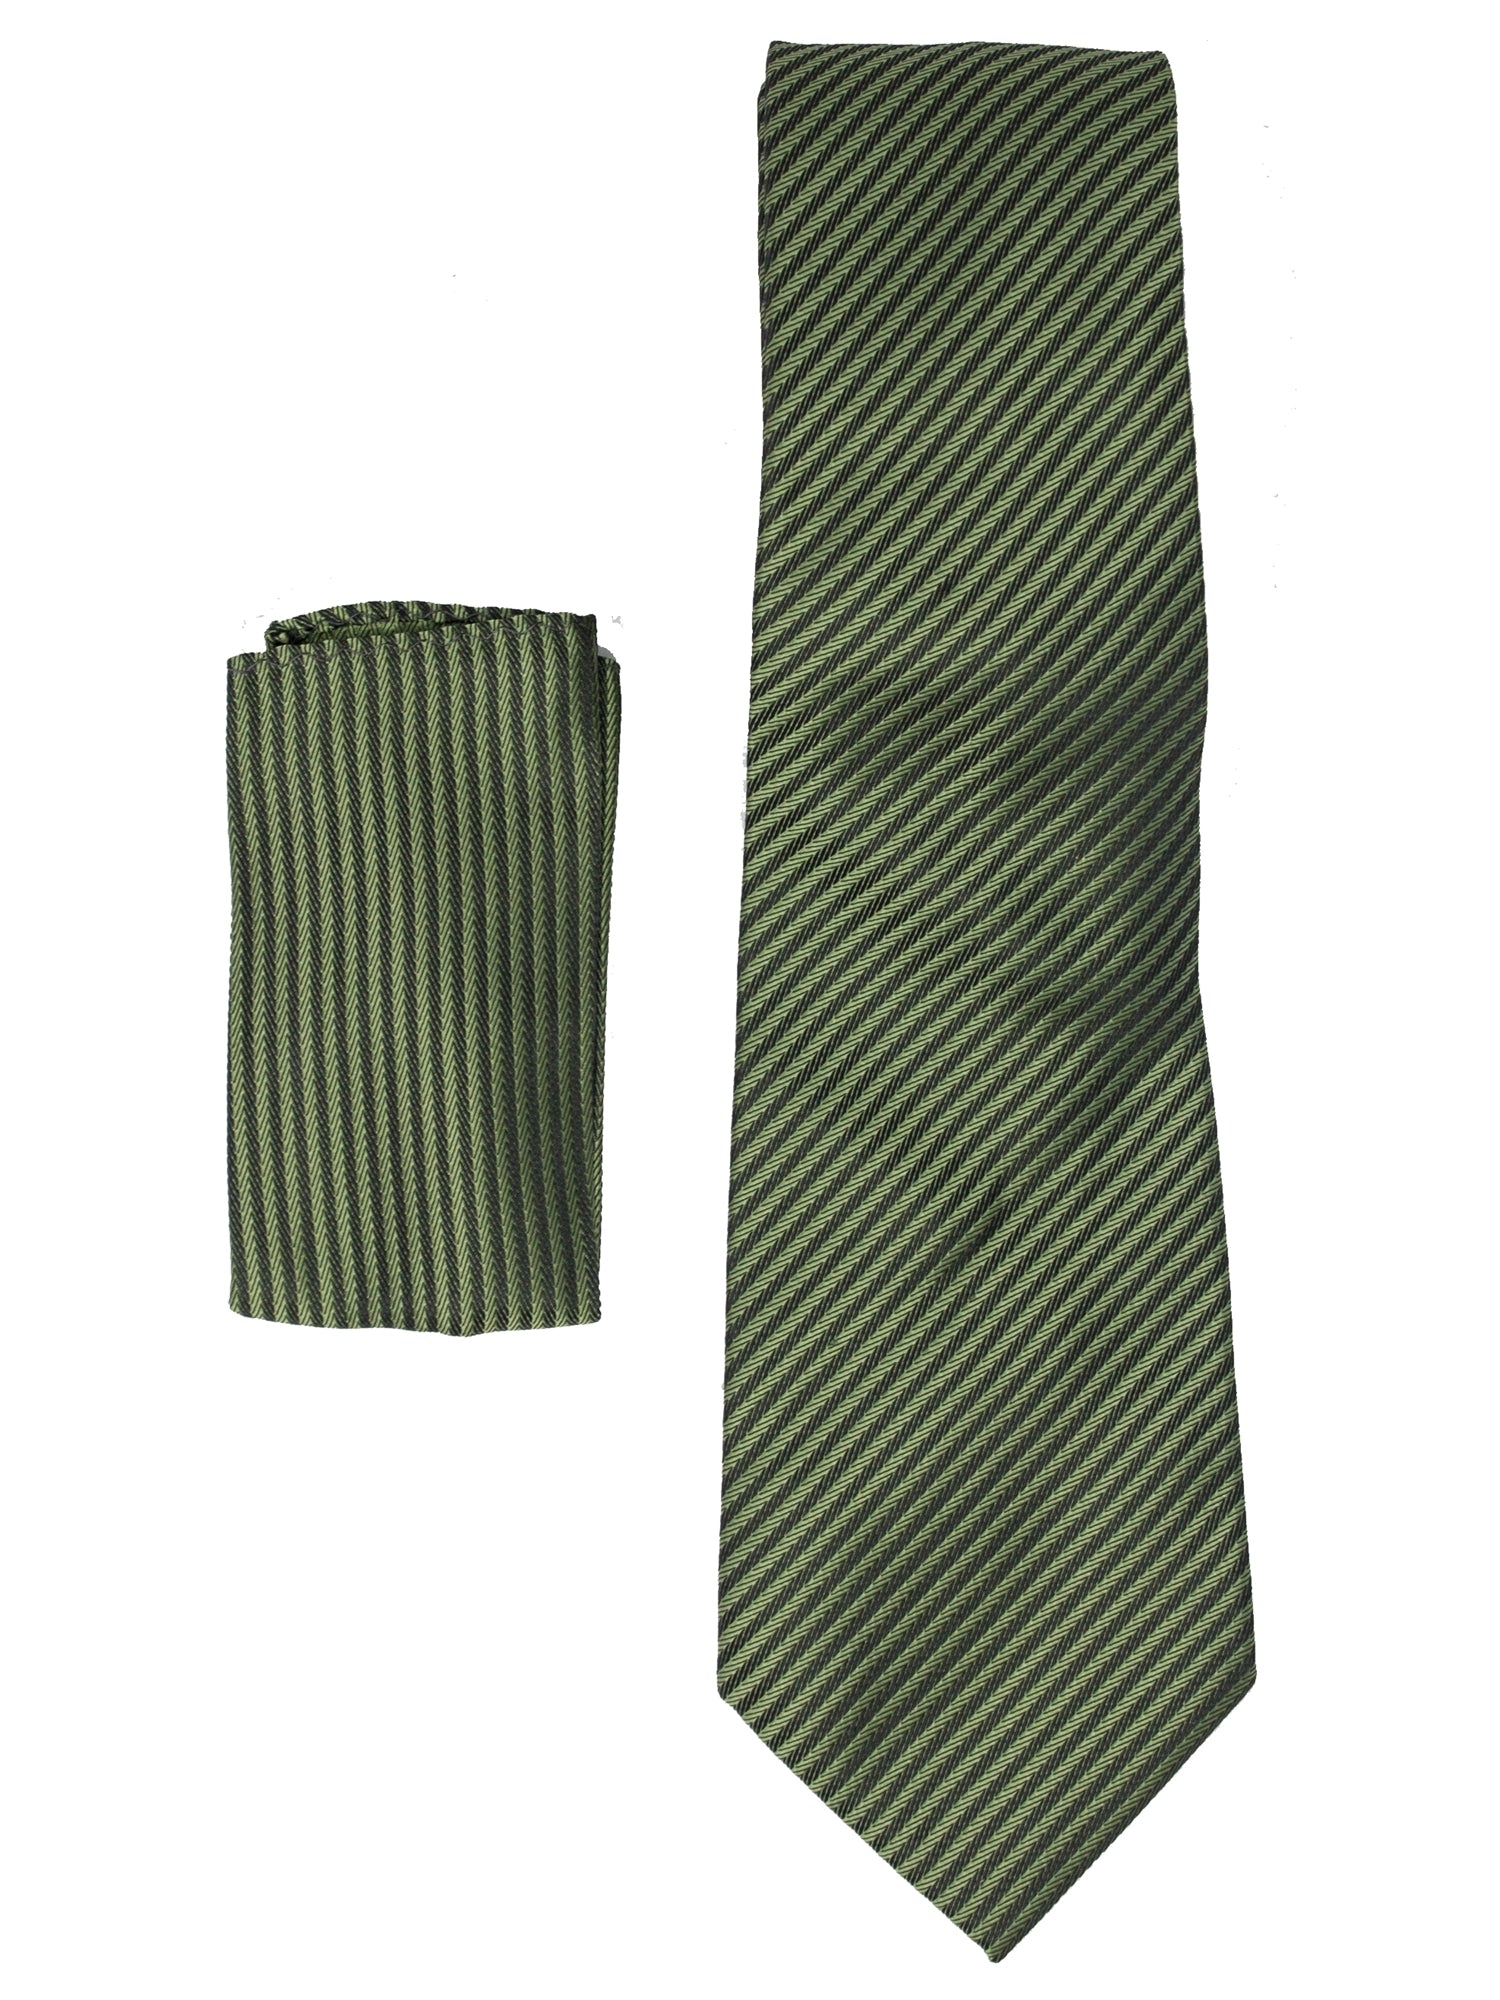 Men's Silk Woven Wedding Neck Tie With Handkerchief Neck Tie TheDapperTie Green Stripe 2 Regular 